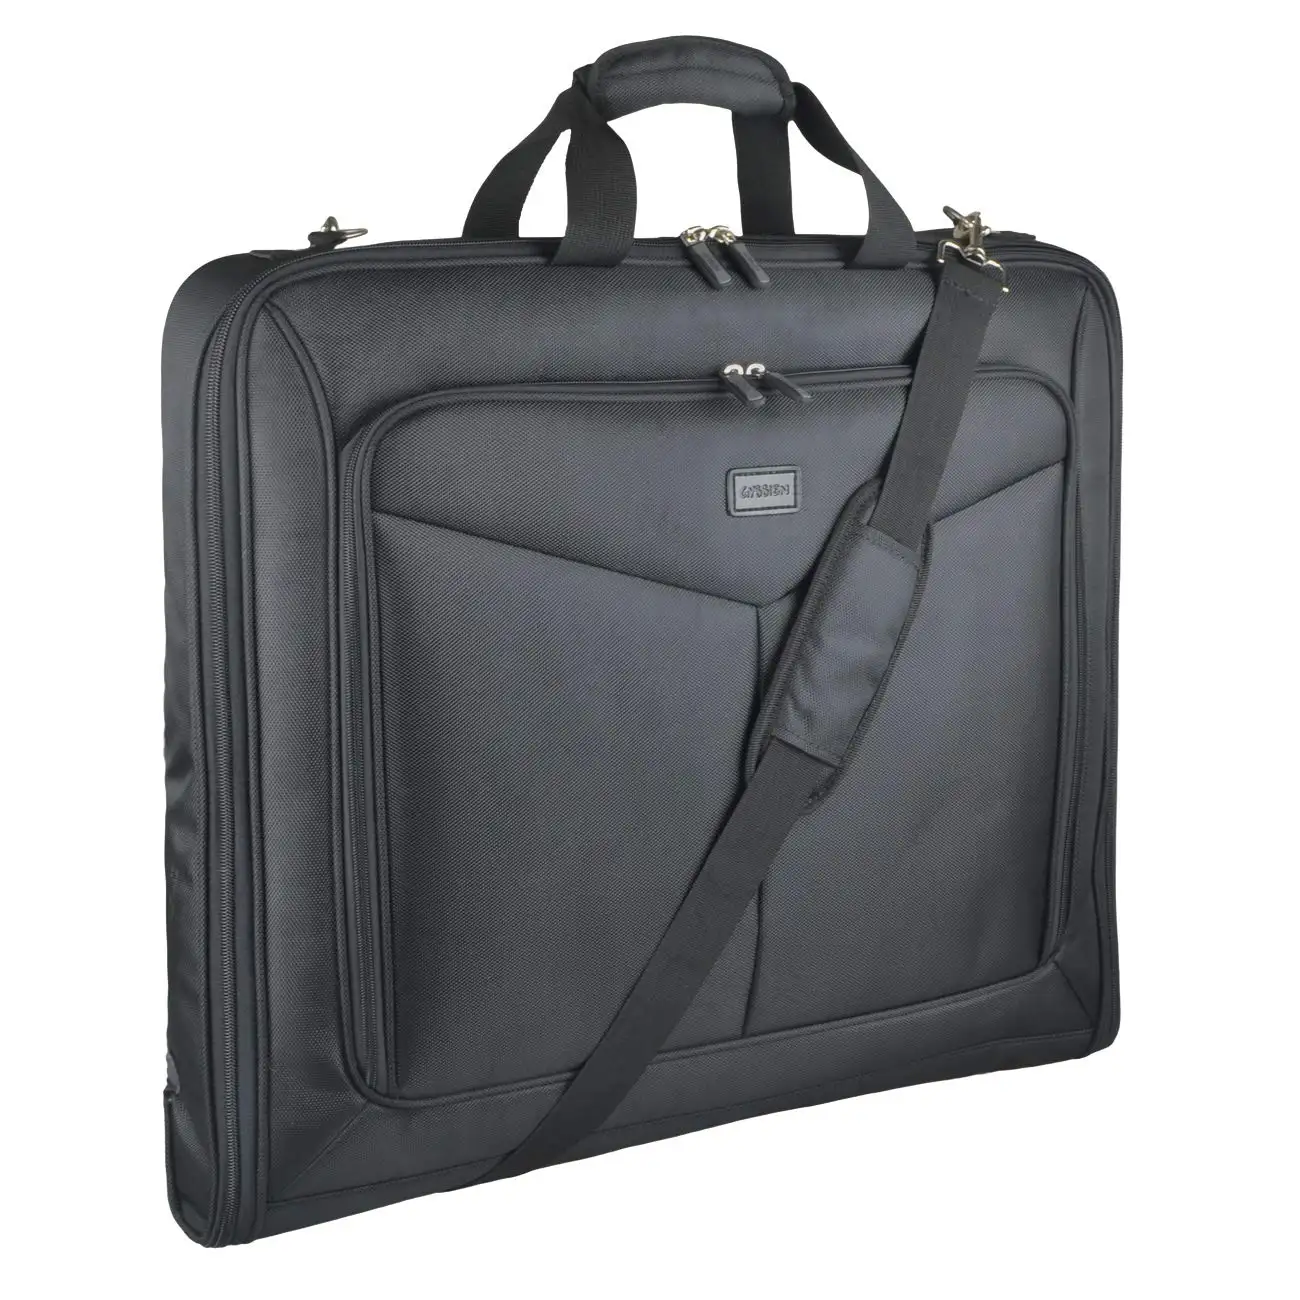 एमएक्स यात्रा व्यापार यात्रा रोलिंग सामान अनुलग्नक बिंदु ठोस रंग कंधे का पट्टा सूट परिधान बैग पर ले जाने के लिए